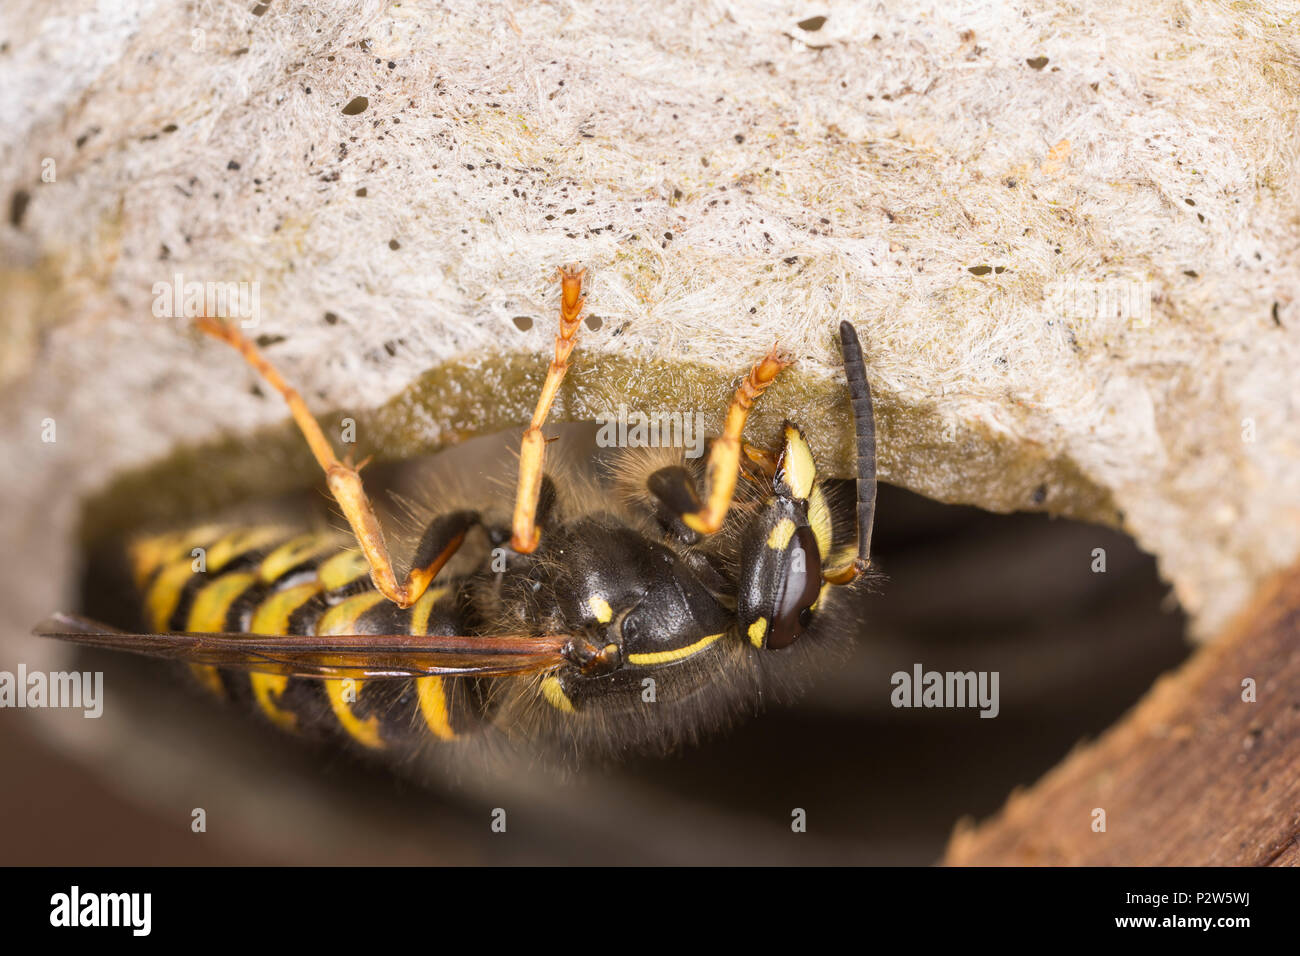 Una vespa all'interno di un vecchio di legno Potting Shed costruendo il suo nido sul tetto utilizzando la saliva e la pasta di legno per aggiungere strati successivi. La Wasp sembra Foto Stock